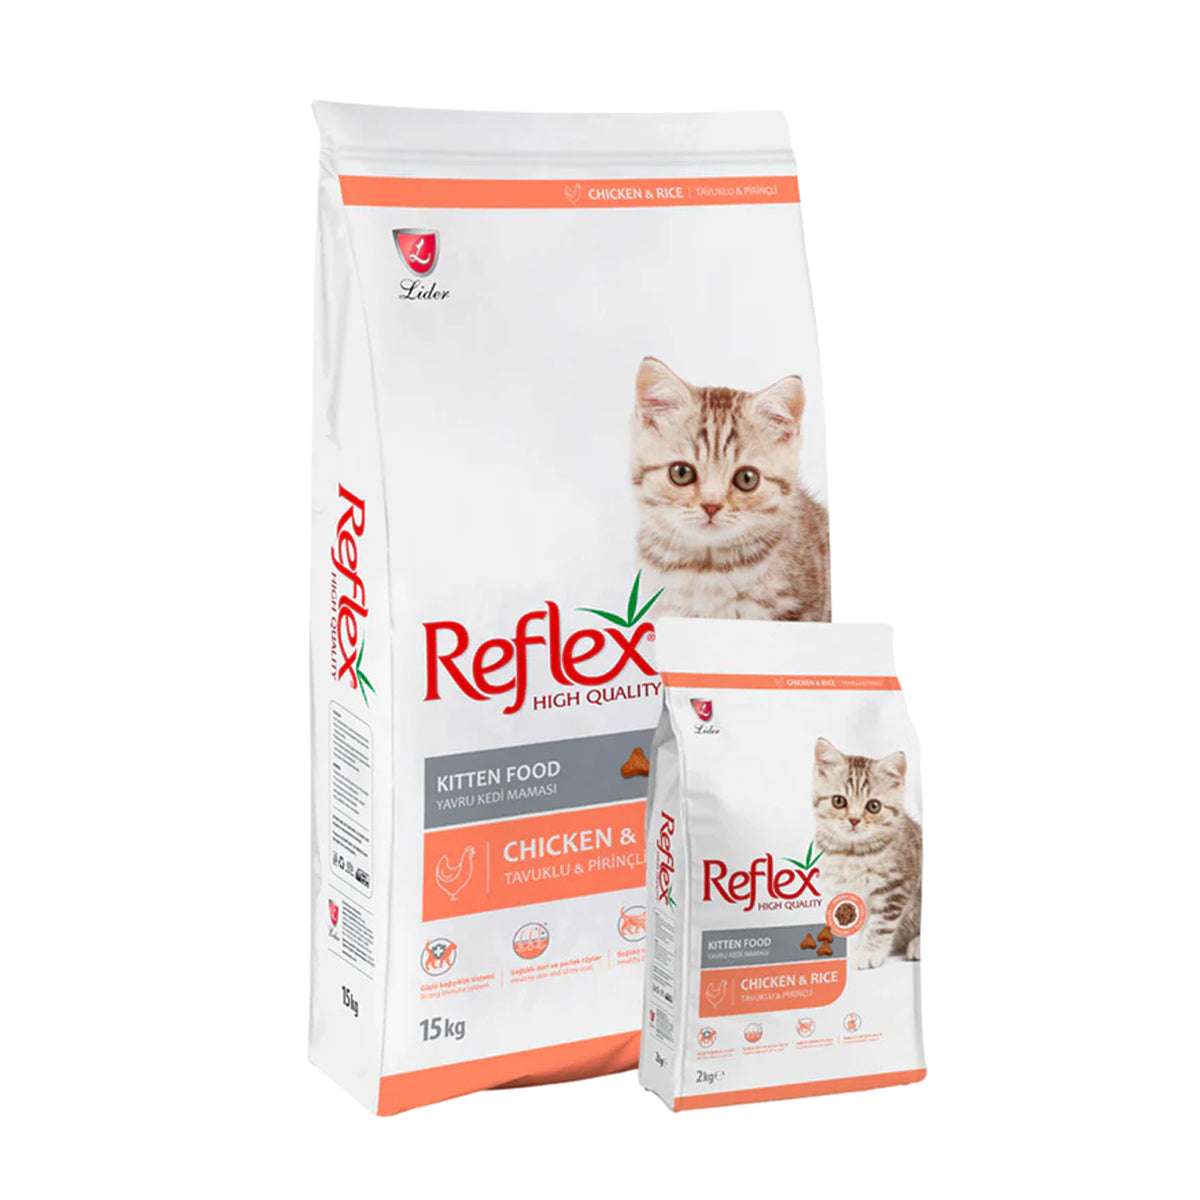 Reflex Kitten Food with Chicken 2kg